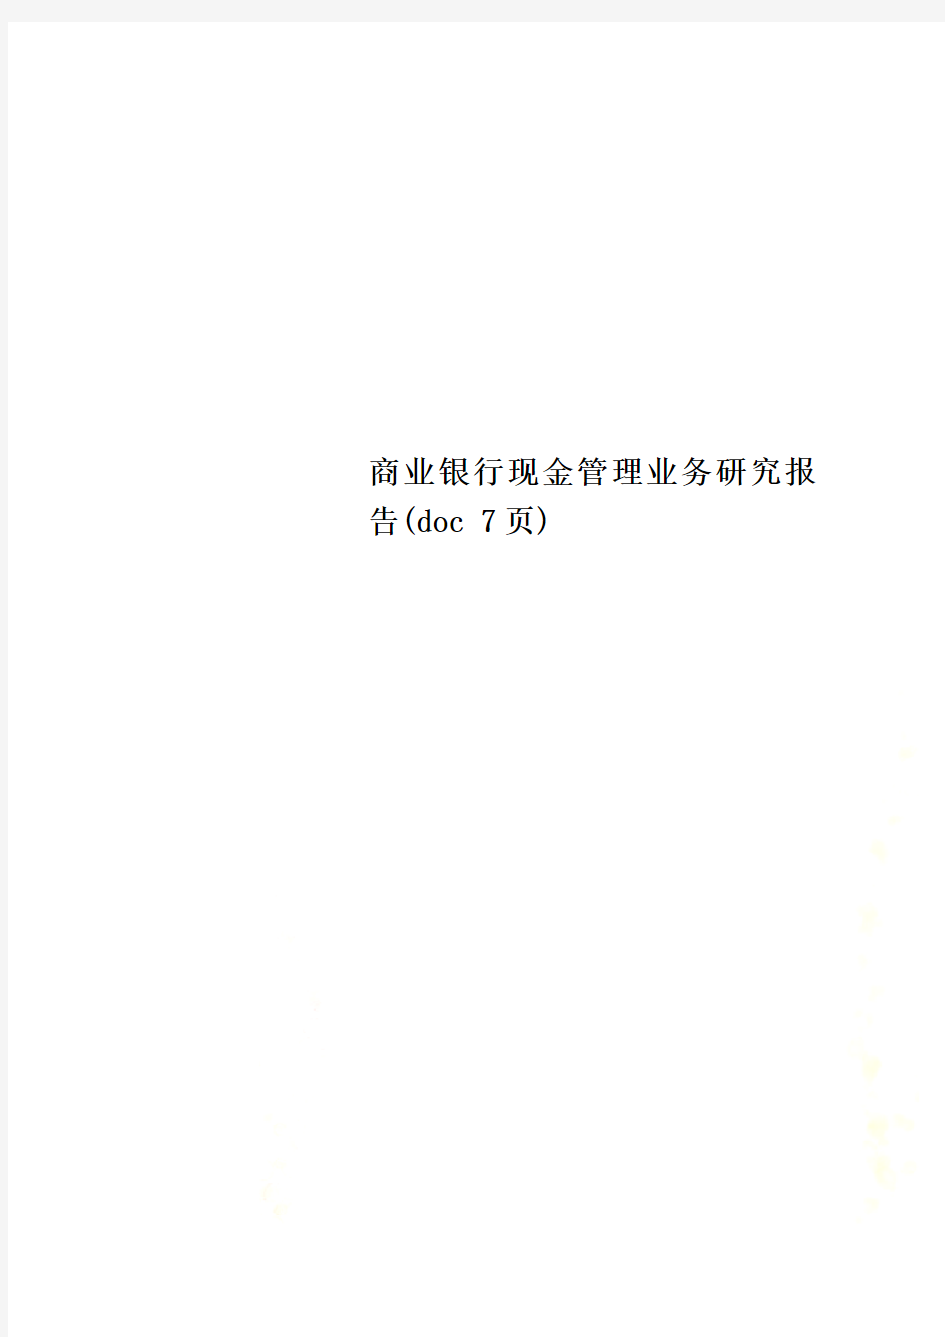 商业银行现金管理业务研究报告(doc 7页)